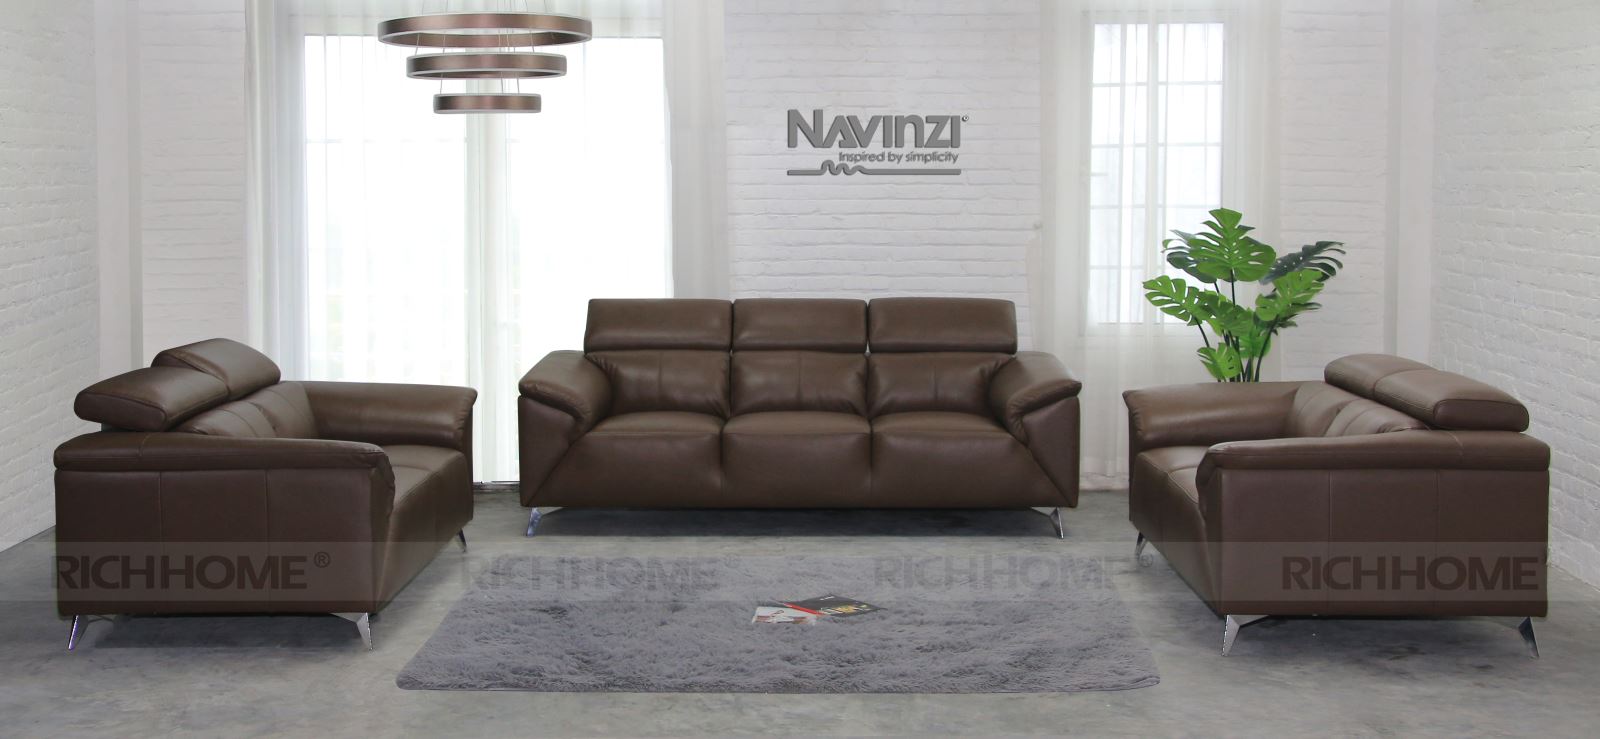 Tại sao hầu hết các mẫu sofa tiếp khách văn phòng đều được thiết kế đơn giản? - Ảnh 3